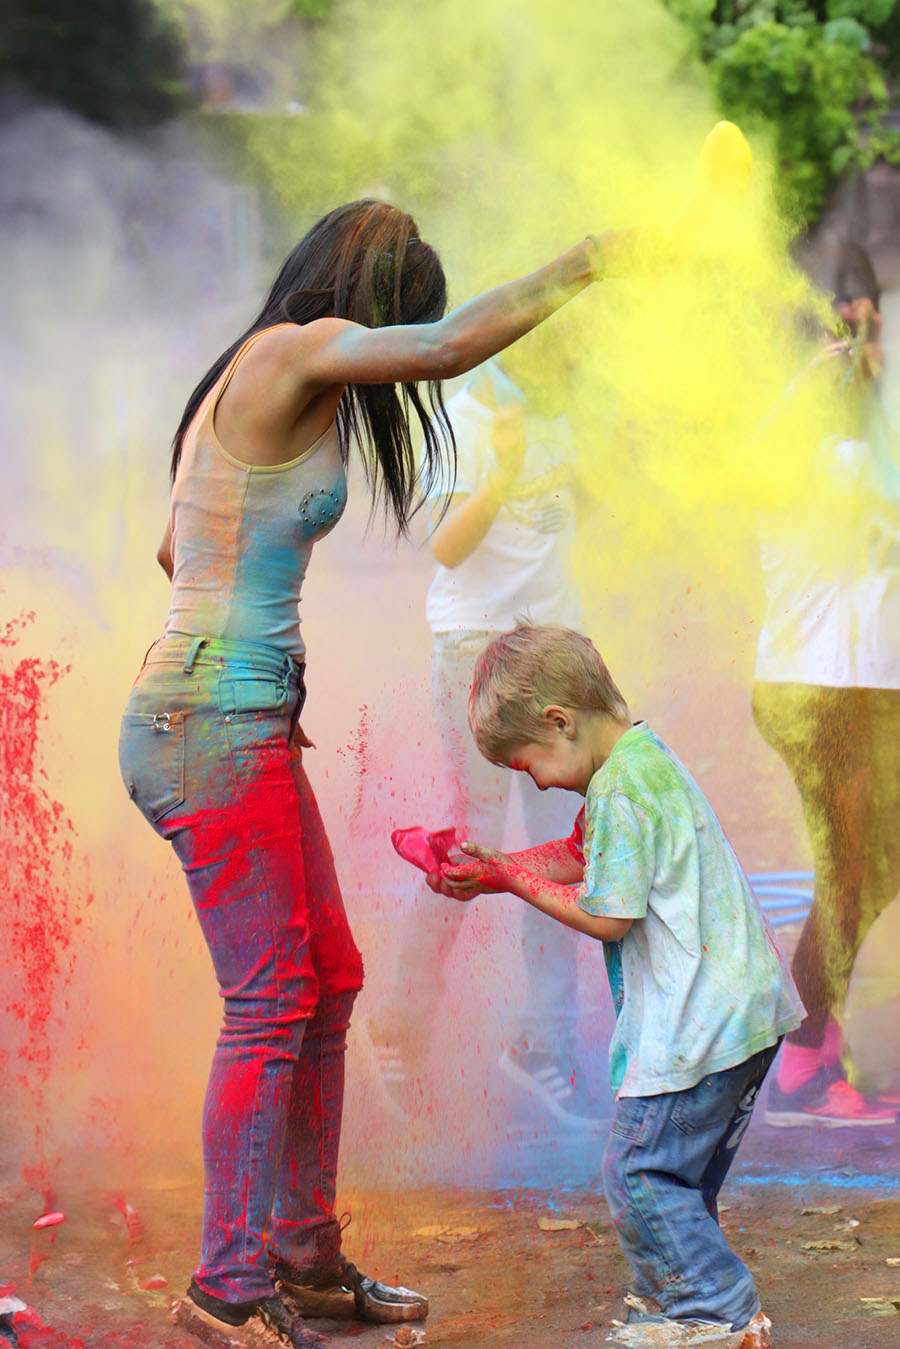 Une jeune-femme qui jette de la poudre colorée en l'air, un enfant fait la même chose juste devant elle. ©2020 Mathieu Improvisato